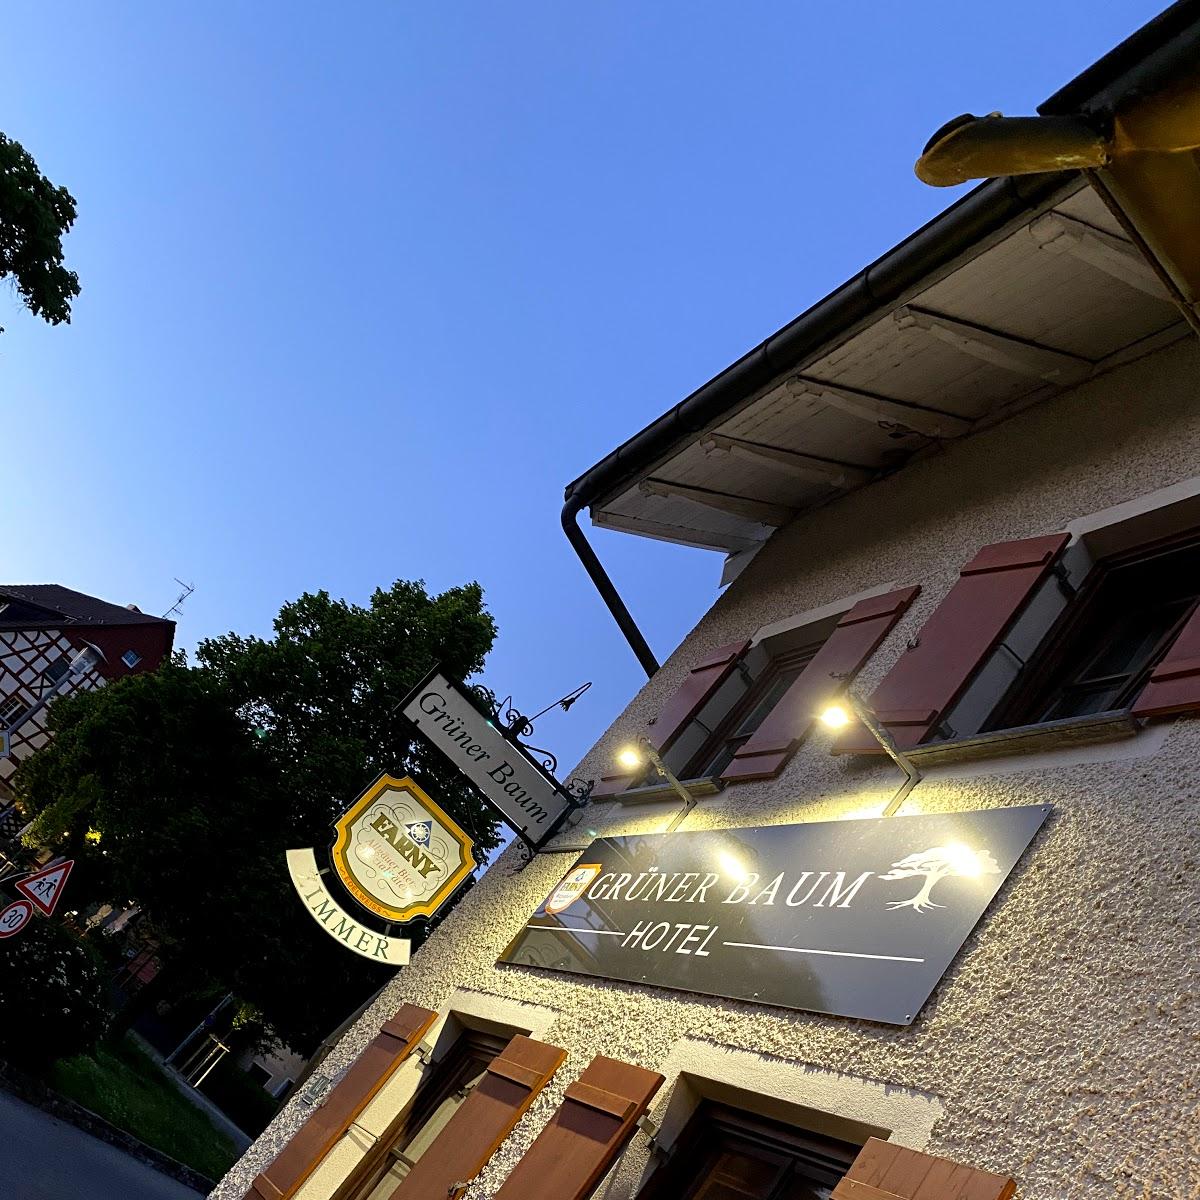 Restaurant "Hotel Grüner Baum" in Lindau (Bodensee)